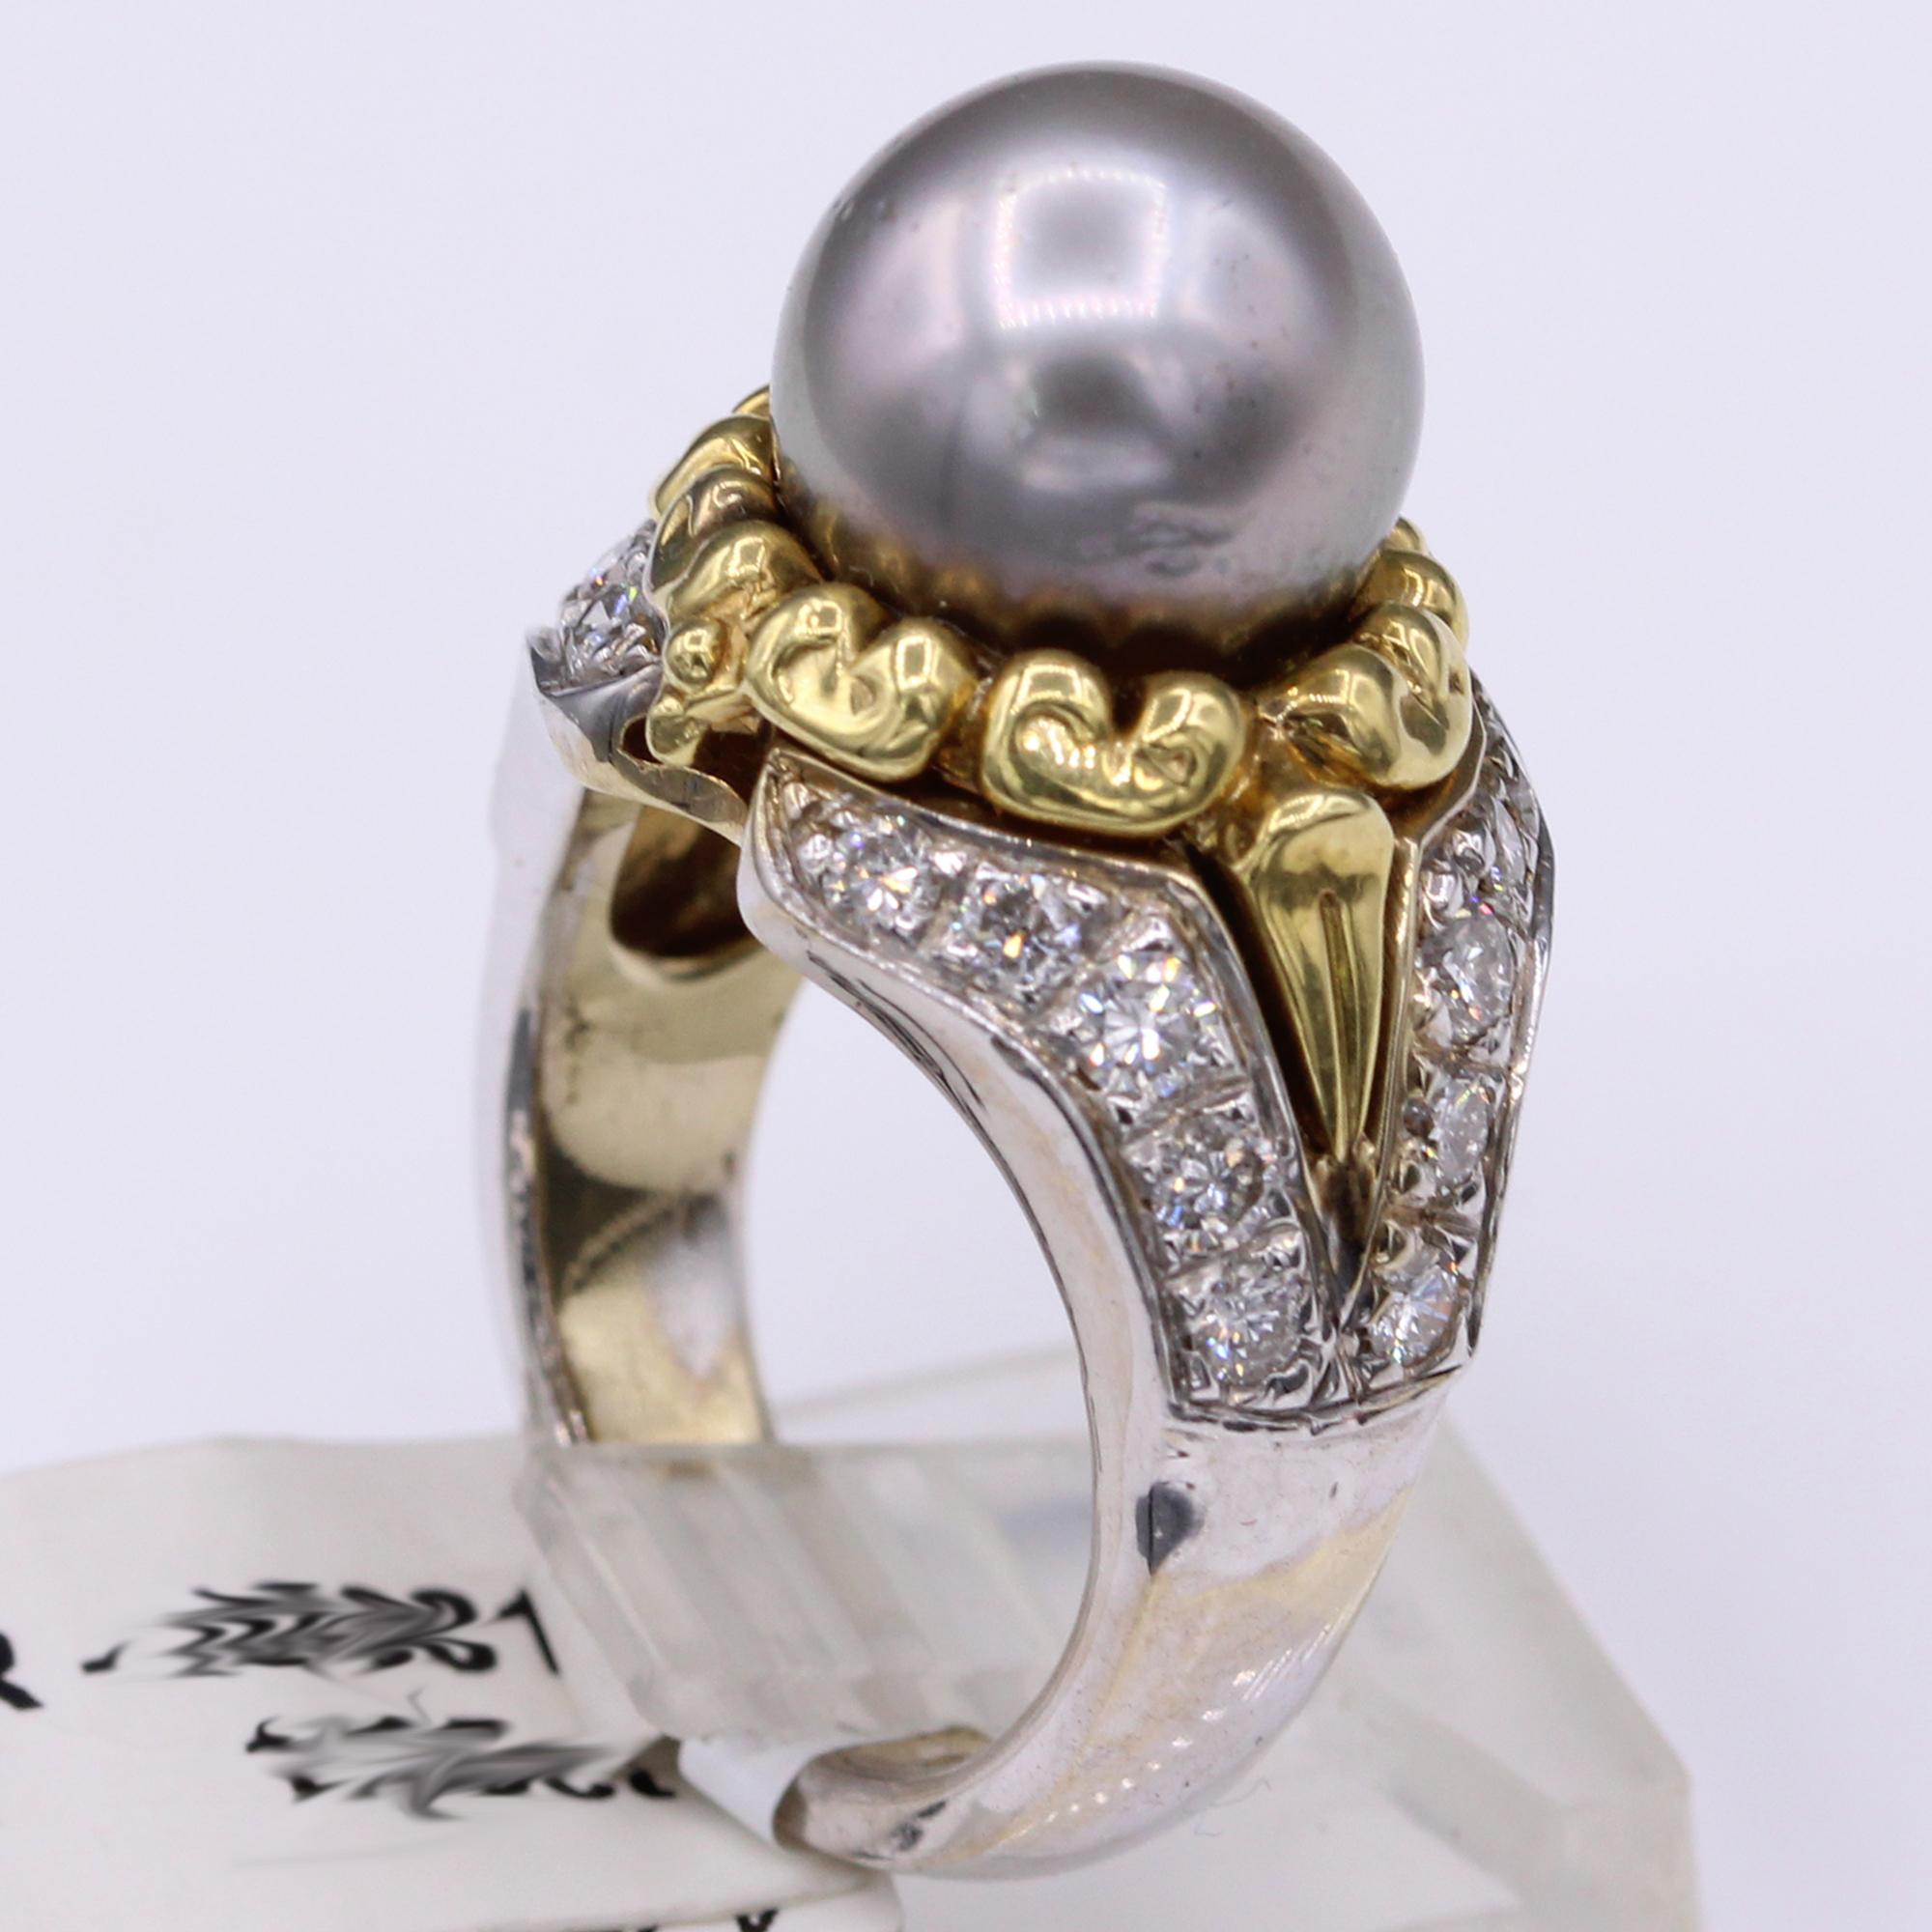 Vintage Perlenring 18K und Diamanten

Hohe Qualität - gut gemachter Tahiti-Perlenring
18k Gelb- und Weißgold  14 Gramm
Tahiti-Perle 11 mm schönen guten Glanz.
Natürliche Brillanten Ca. 1,30 Karat G-VS-SI (sehr schöne funkelnde Diamanten)
Fingergröße